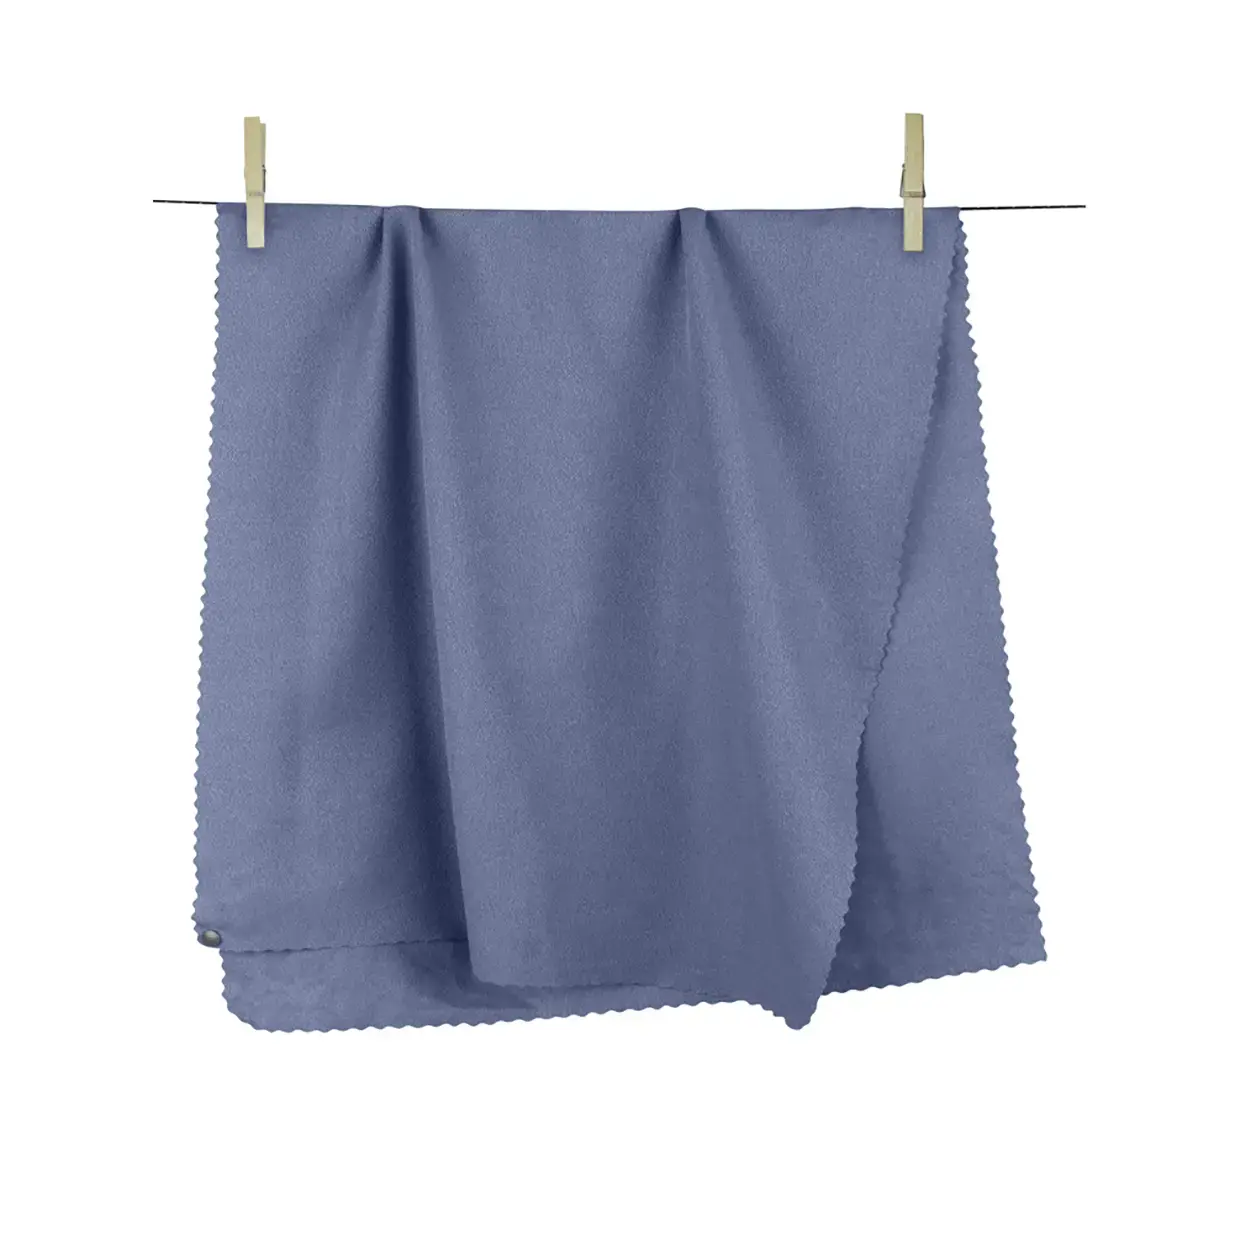 Sea To Summit Airlite Towel Medium Handdoek Lichtblauw